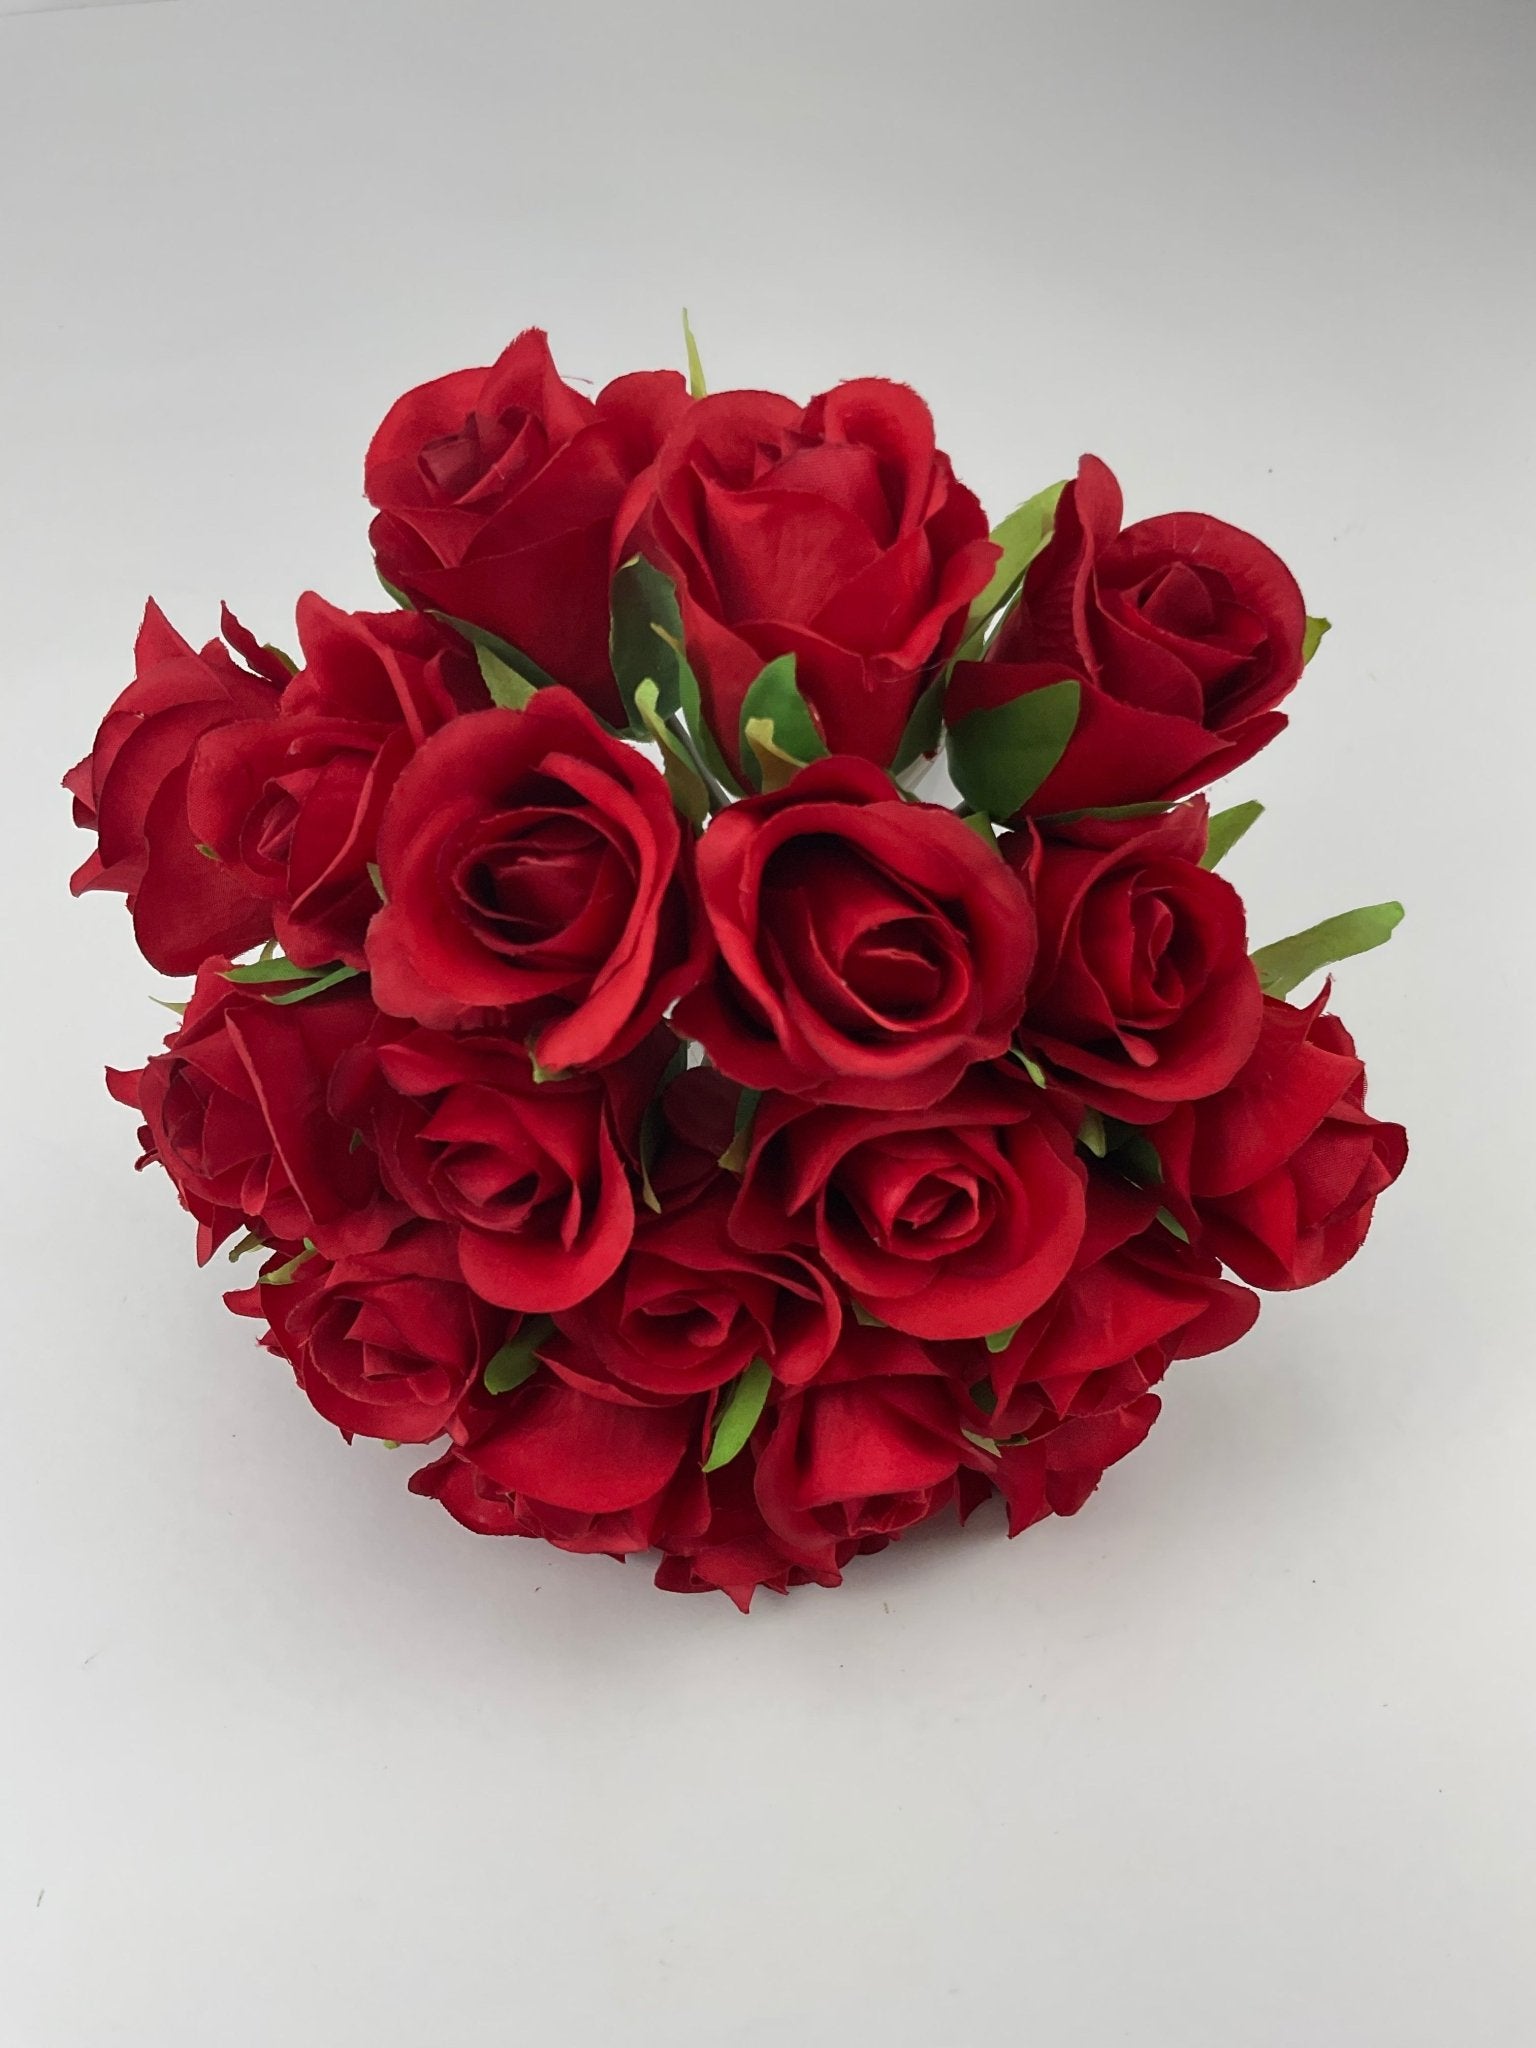 Rose bundle - red - Greenery MarketArtificial Flora25838